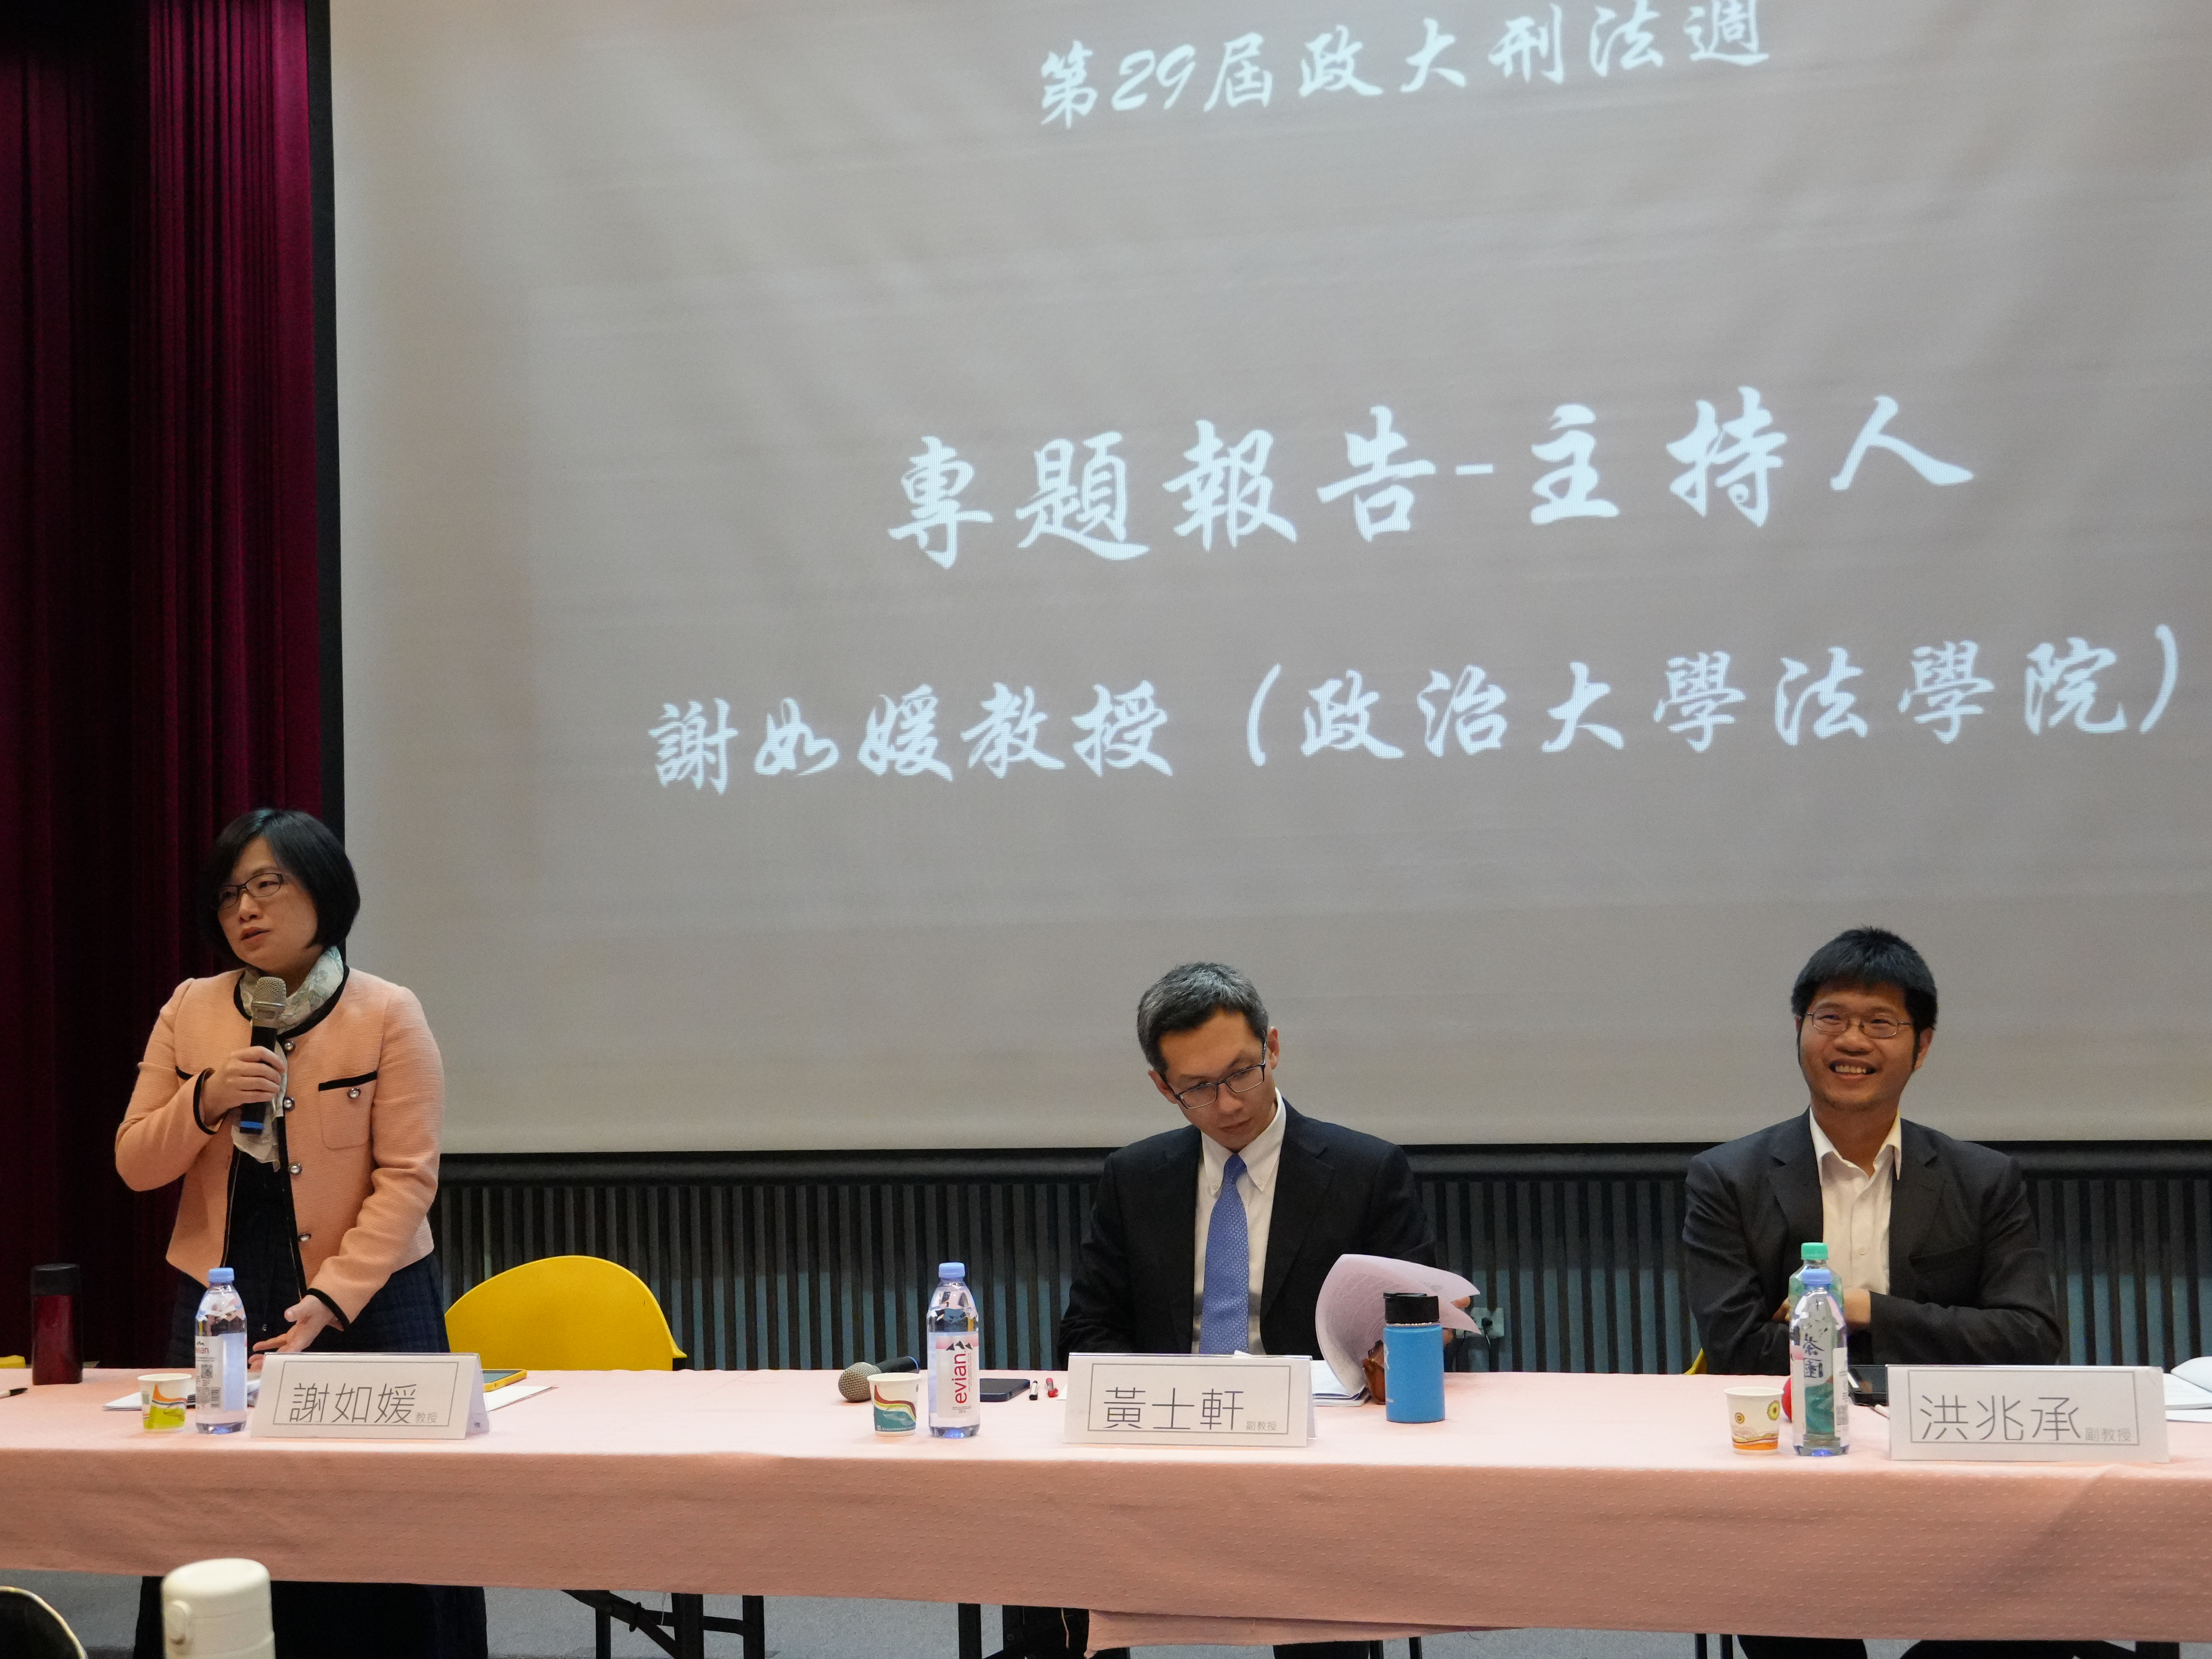 第三場次由謝如媛教授擔任主持人，由左至右為：謝如媛教授、黃士軒副教授、洪兆承副教授。